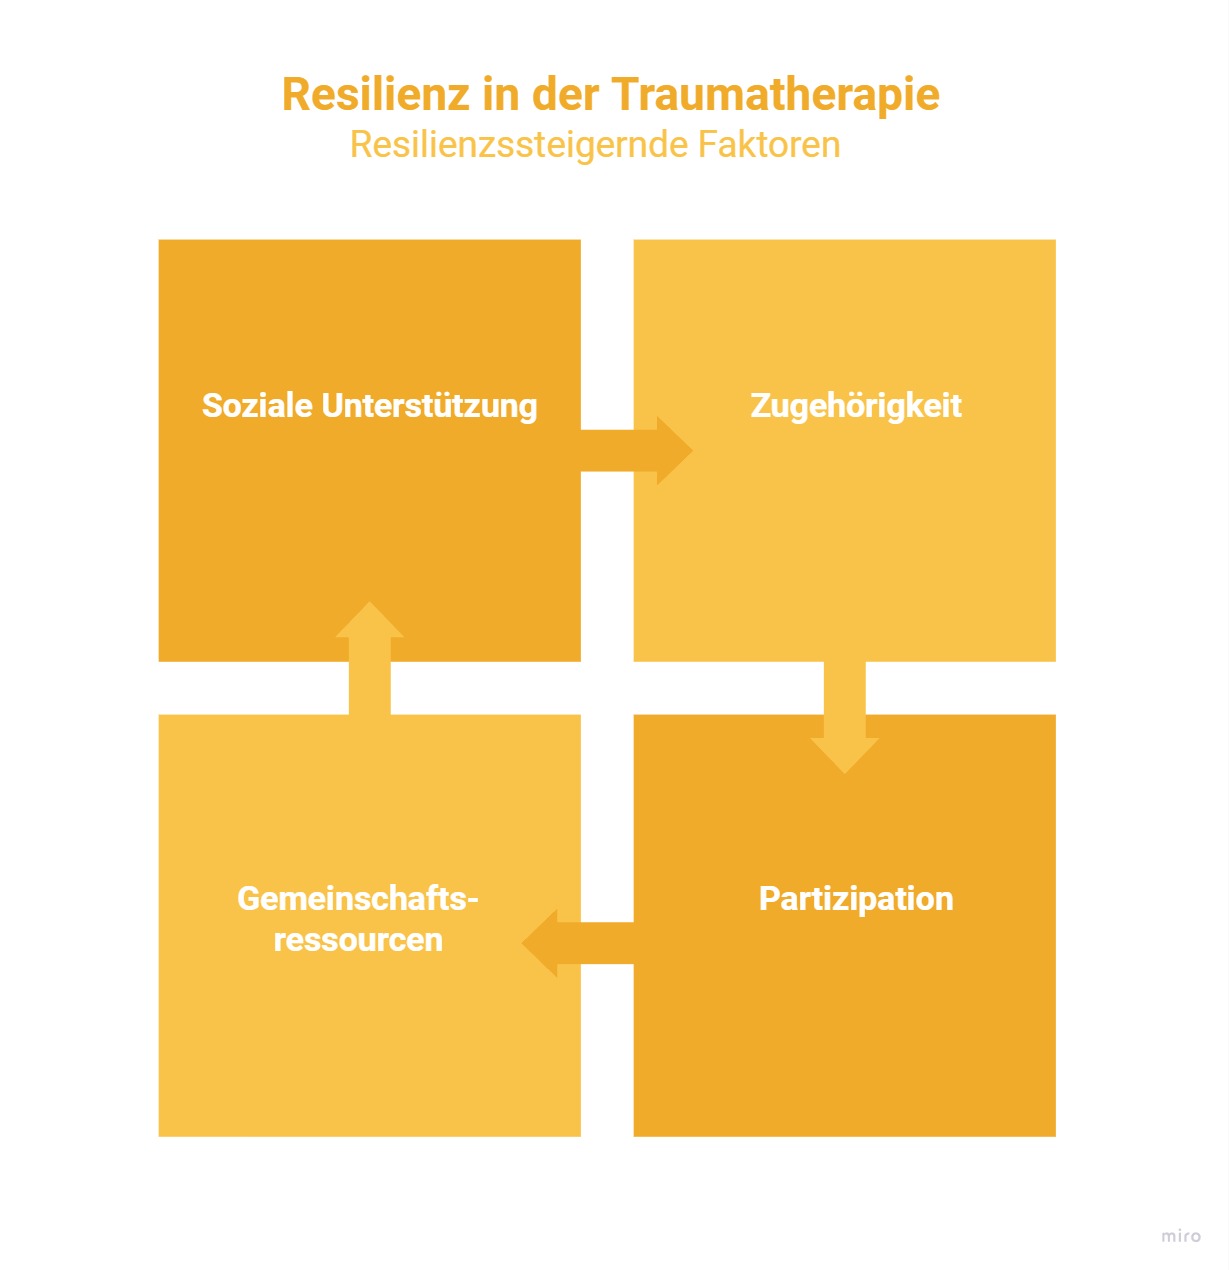 Resilienzsteigernde Faktoren aus der Traumatherapie